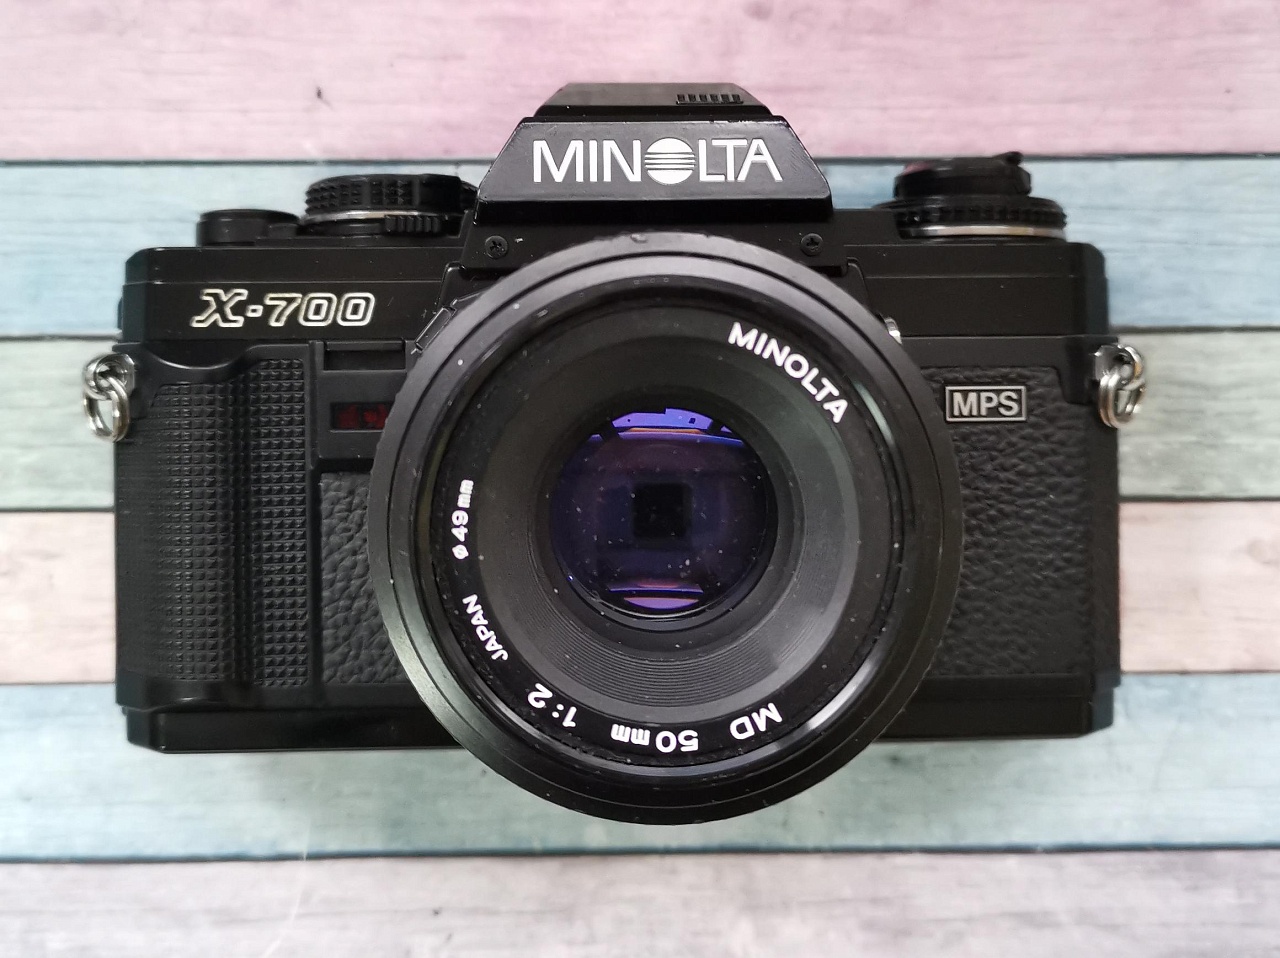 Minolta X-700 + Minolta md 50 mm f/2 фото №1